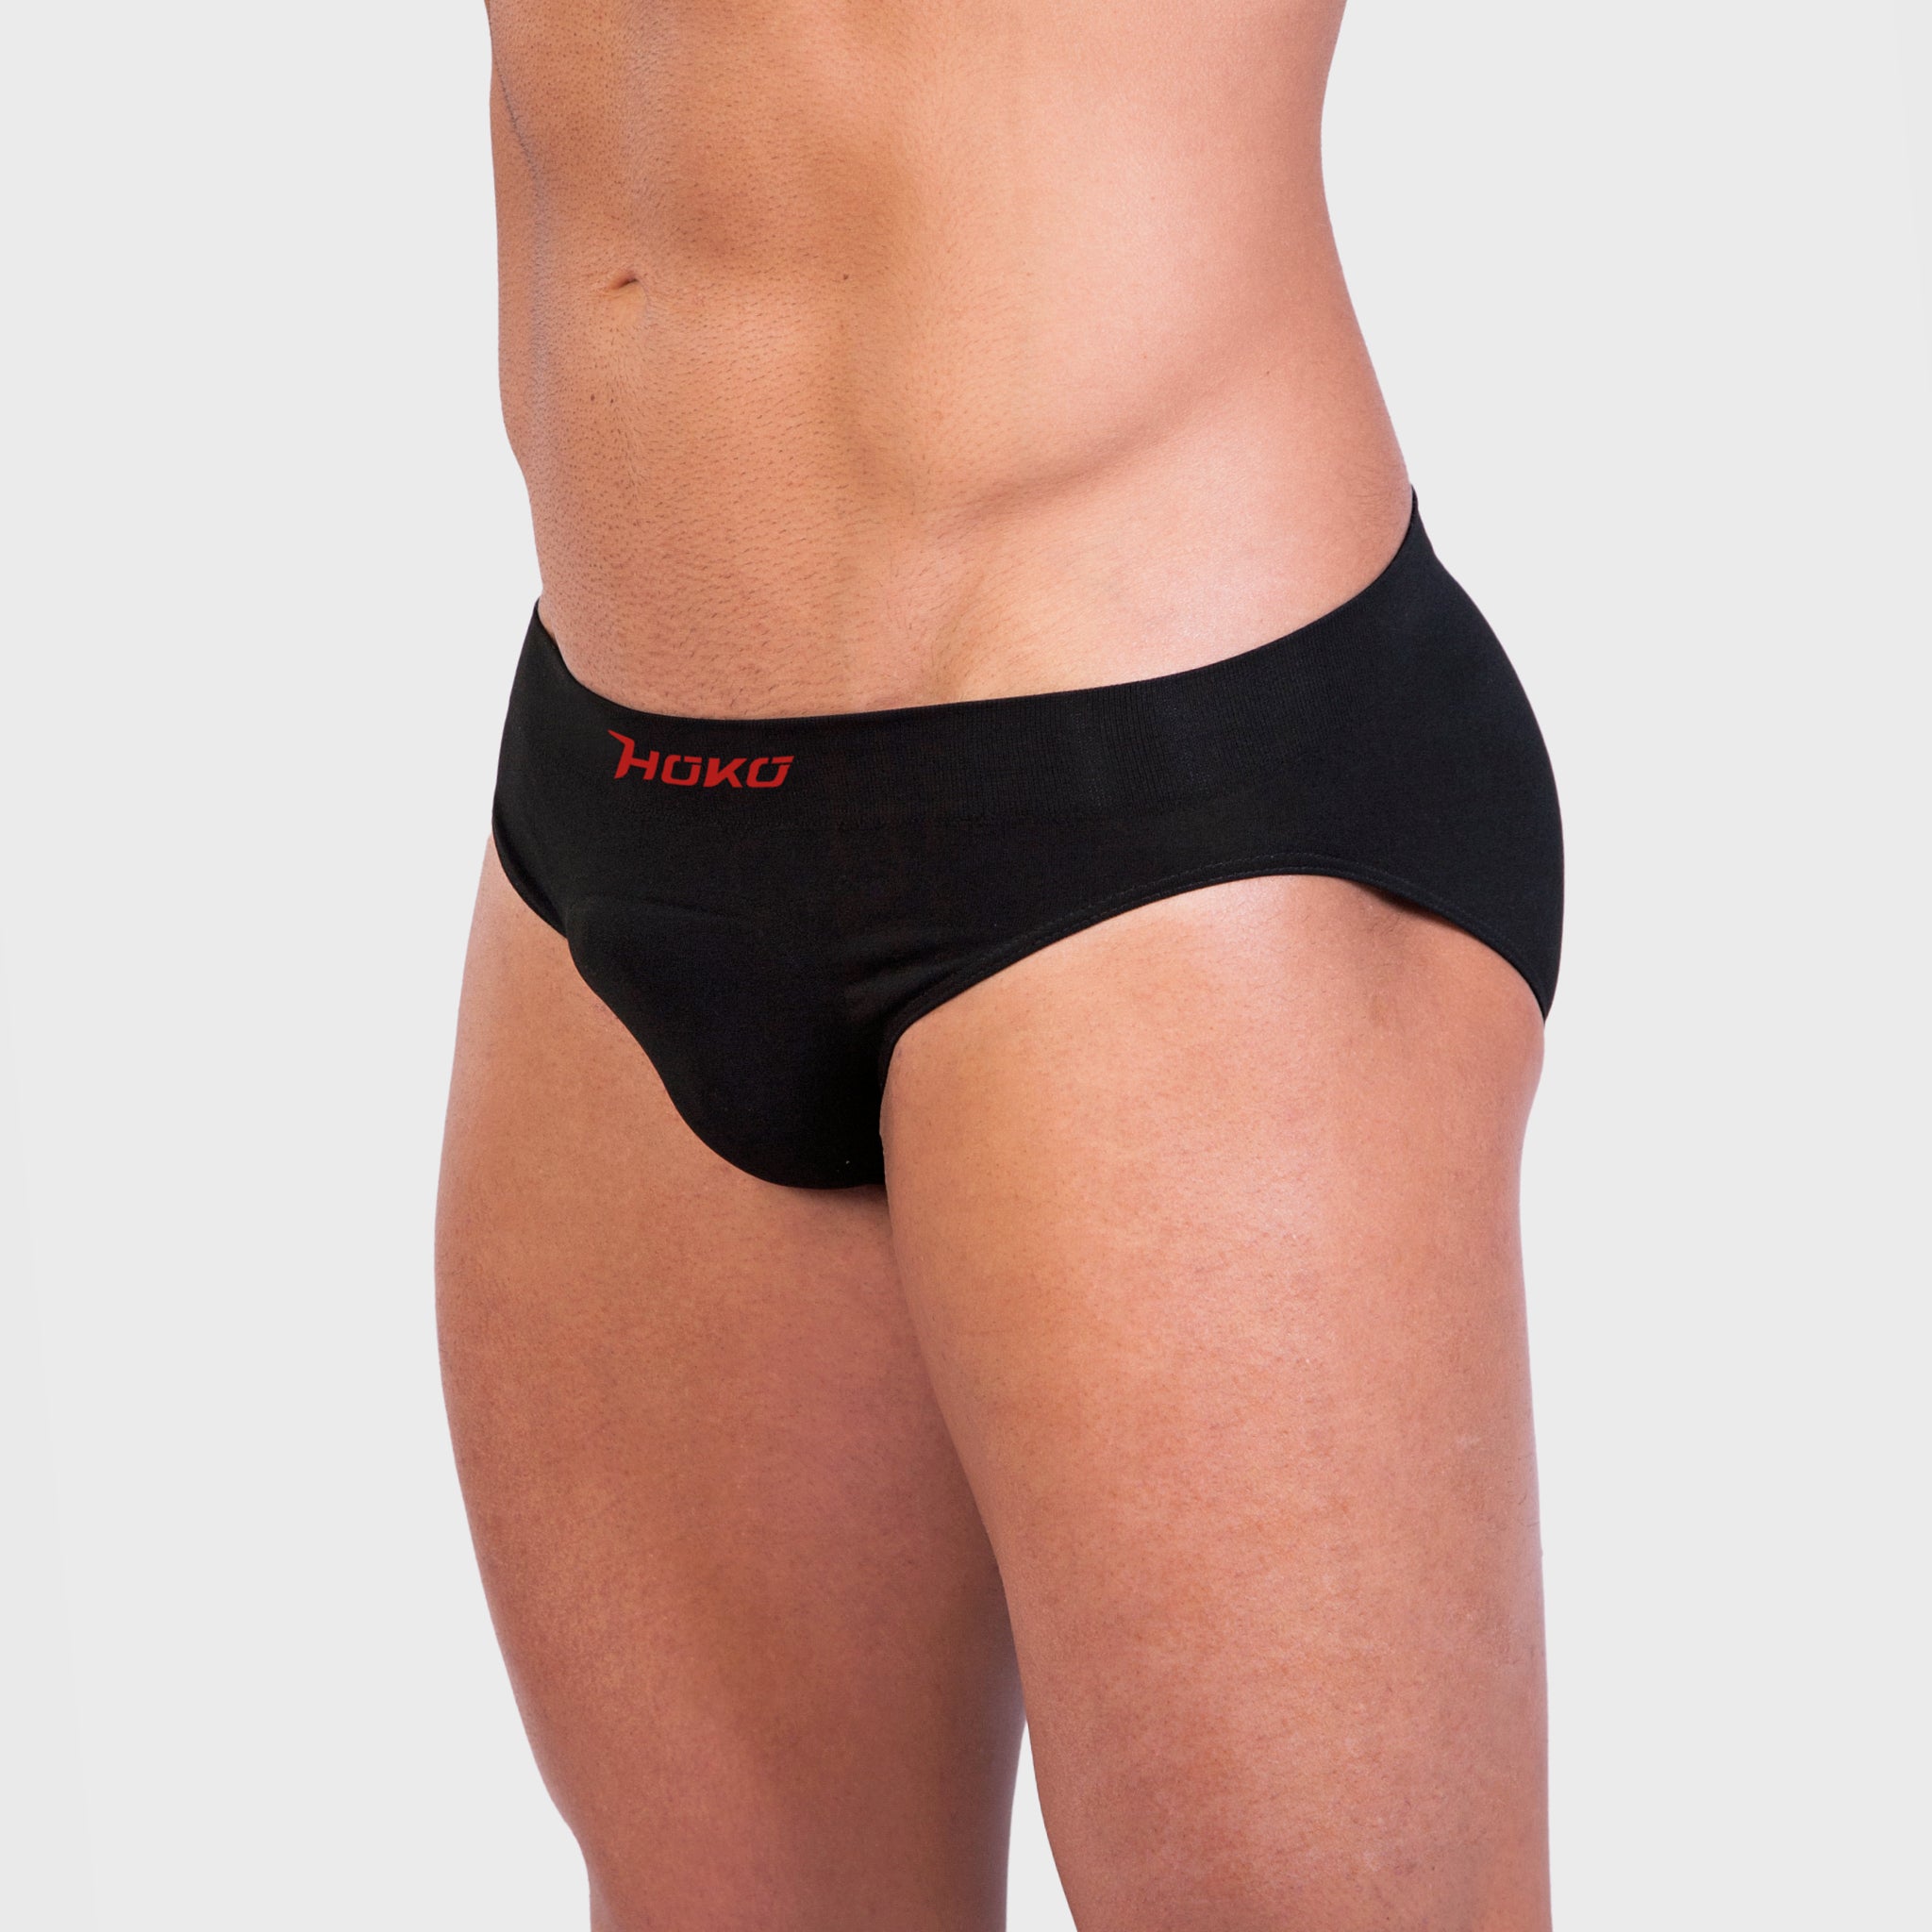 Sous-Vêtement Pour Homme KELUO Slip à Taille Elastiquée - Haute Qualité en  Coton BK0072 - Sodishop